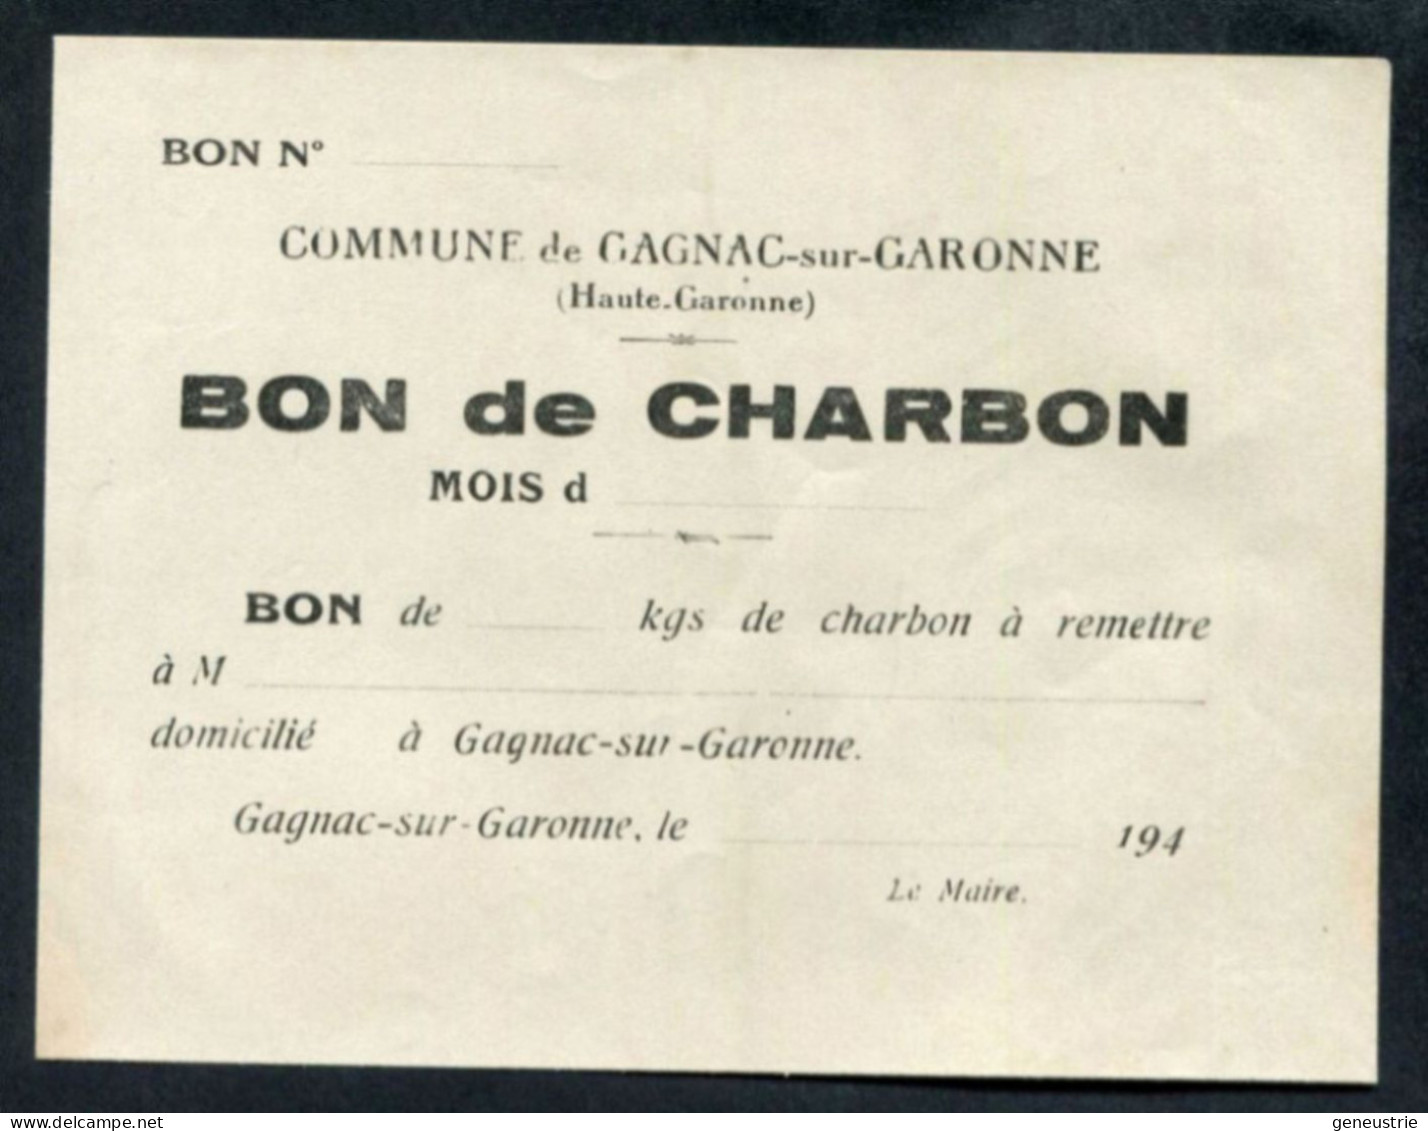 WW2 Billet De Nécessité "Bon De ... Kg De Charbon - Gagnac-sur-Garonne (Toulouse) Années 40" WWII - Notgeld